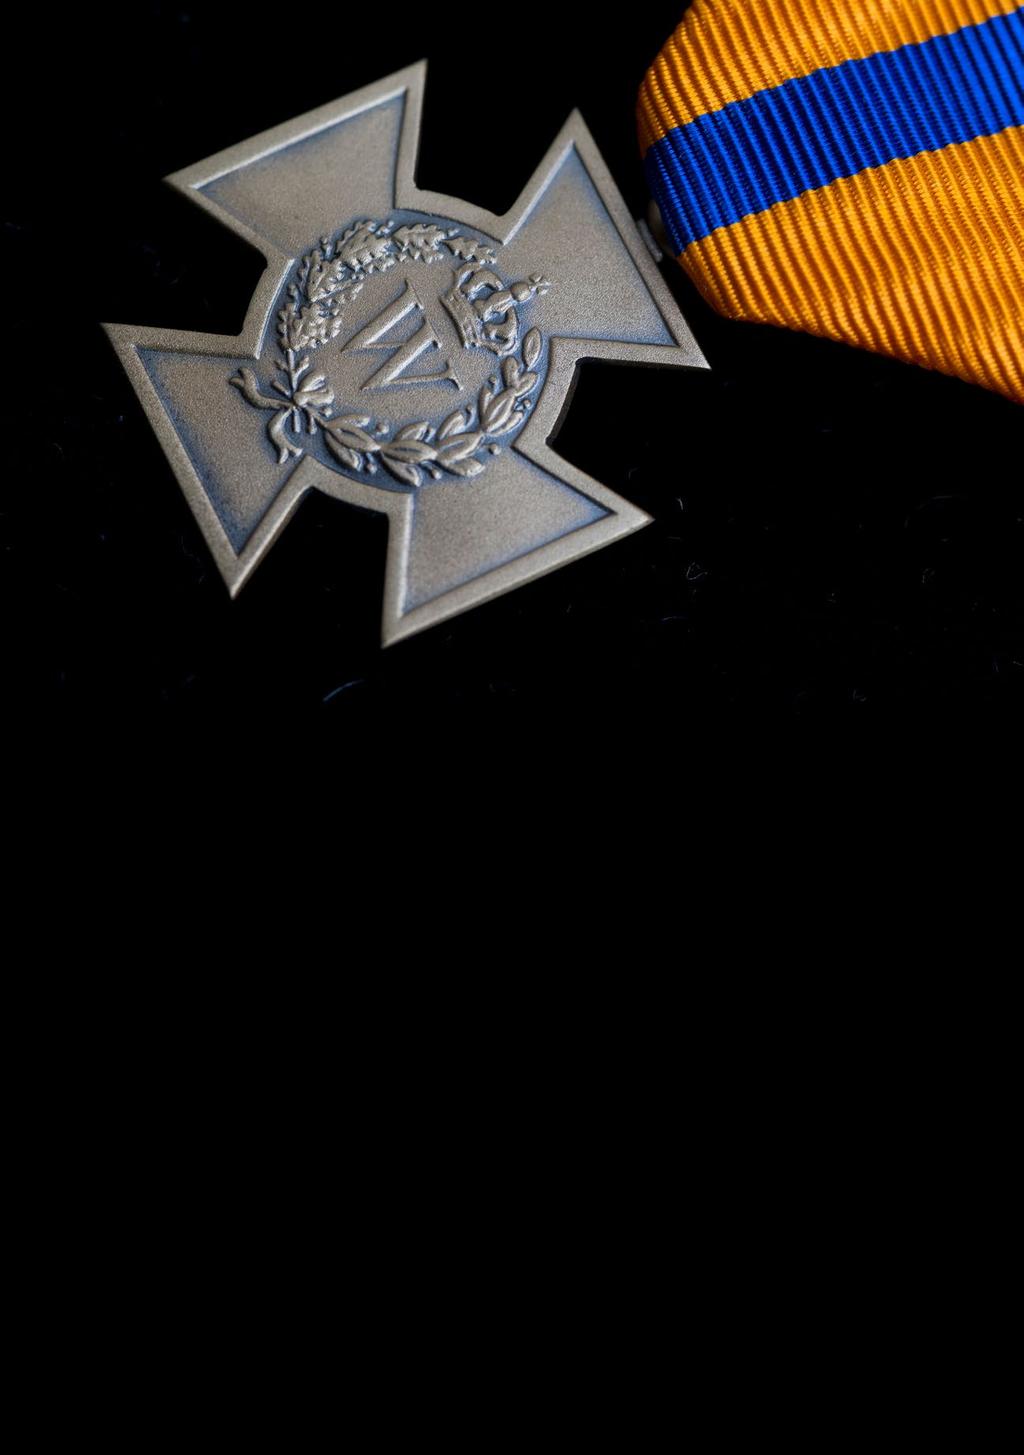 Bronzen Kruis Het Bronzen Kruis, ingesteld in 1940, wordt toegekend aan Nederlandse militairen, die zich ten behoeve van de Nederlandse Staat door moedig of beleidvol optreden tegen de vijand hebben